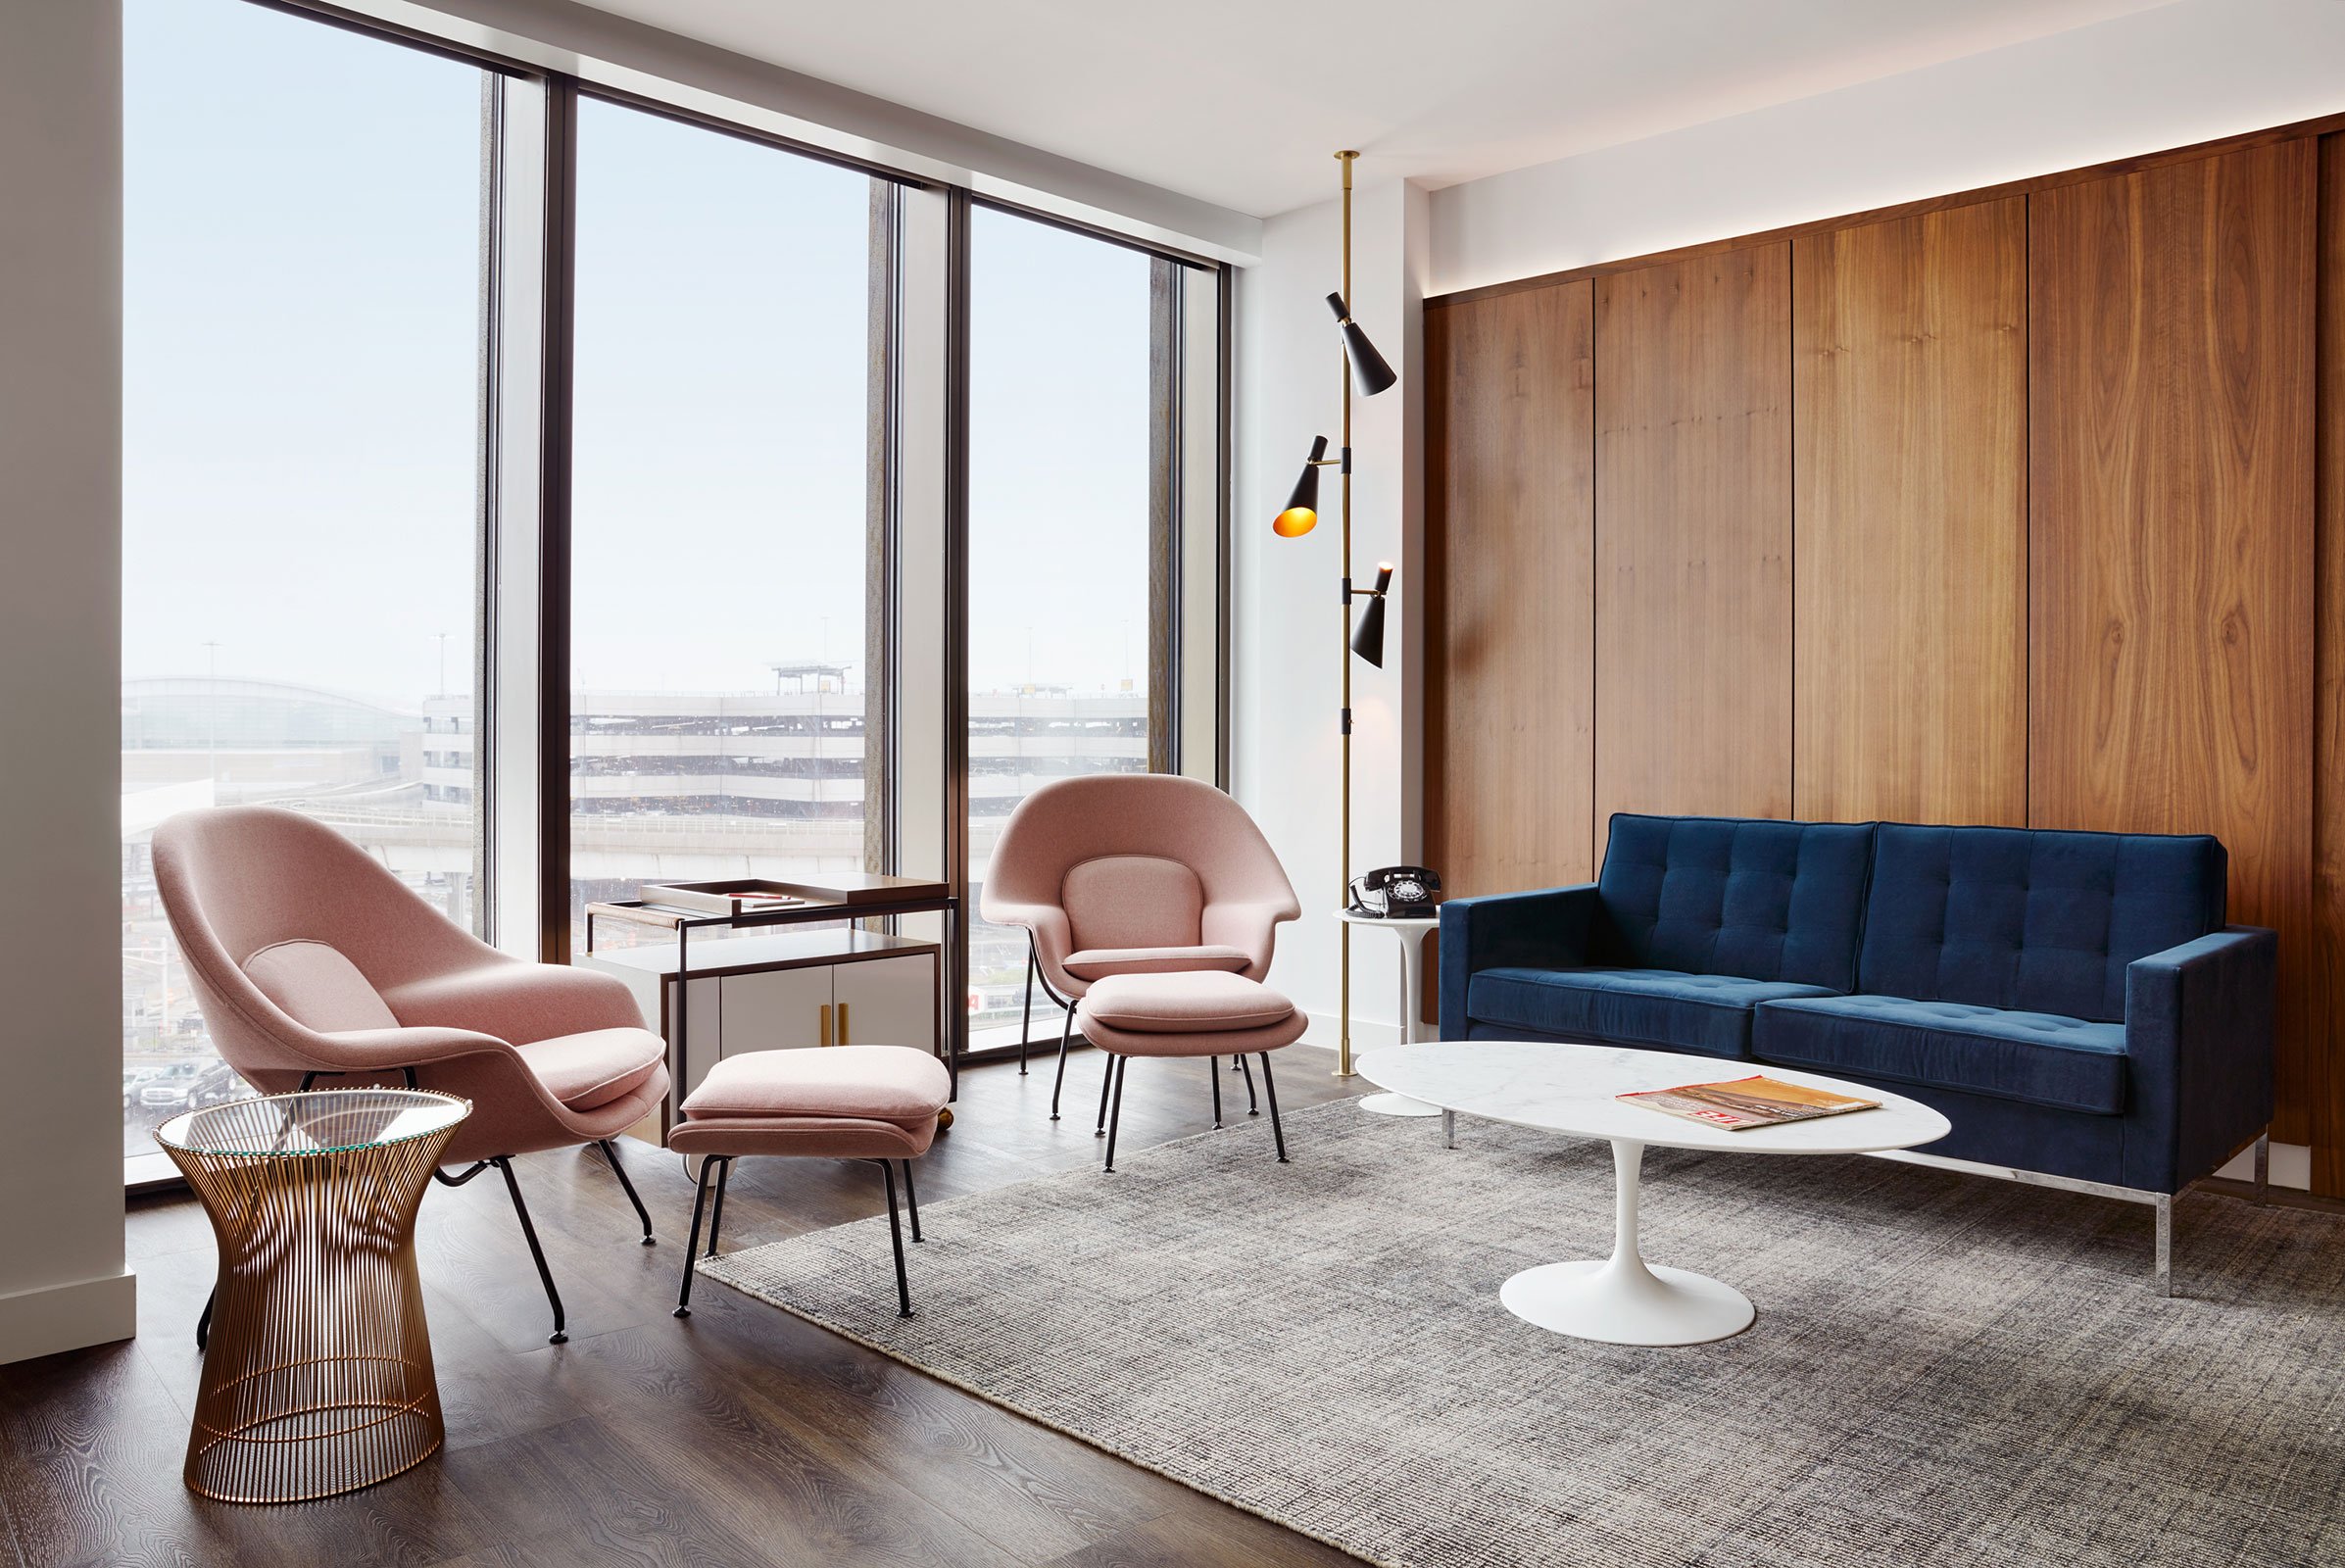 Eero Saarinen Presidential Suite With Historic TWA View